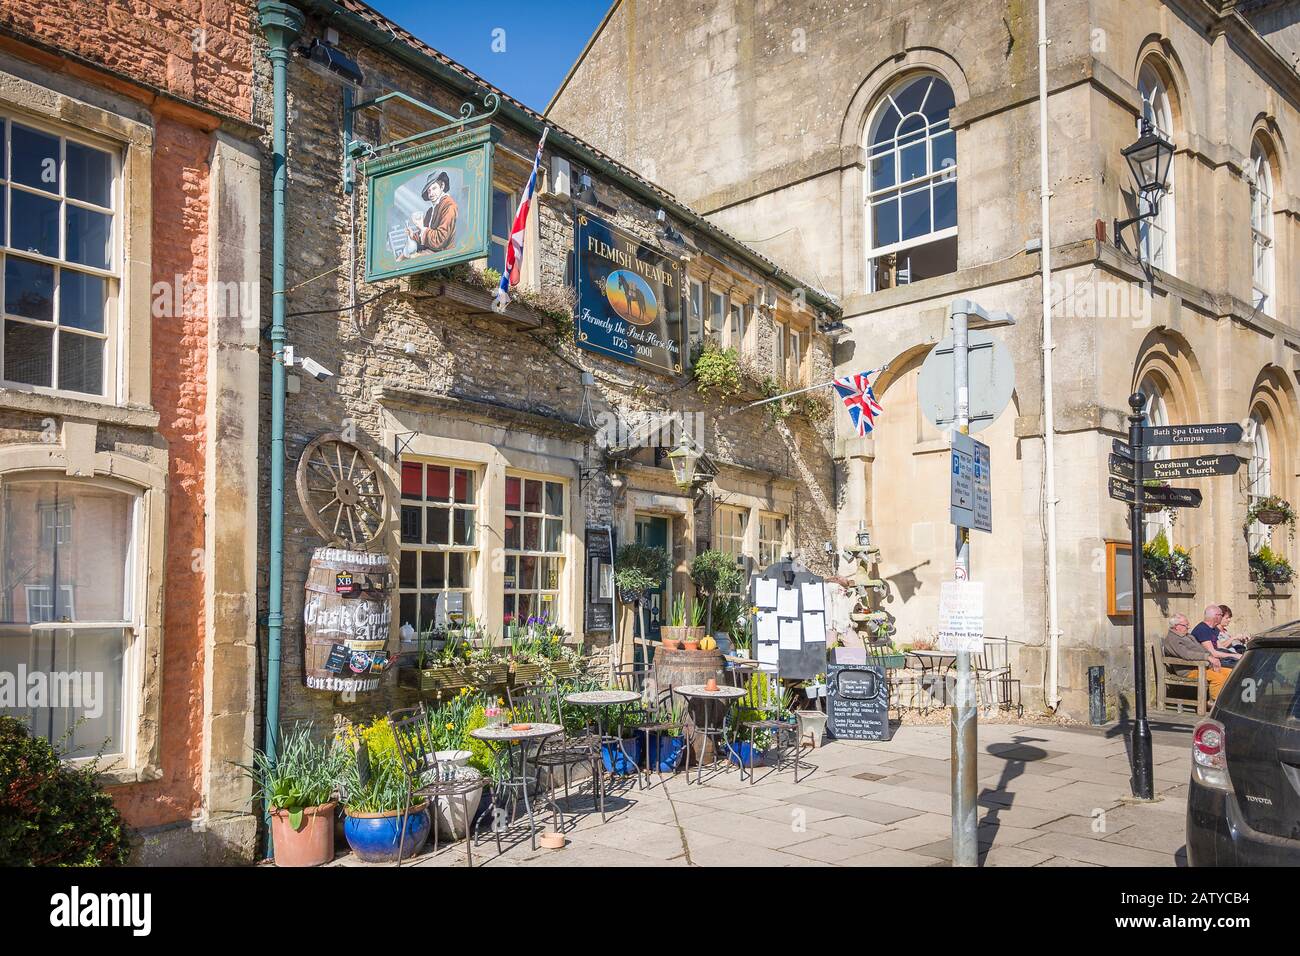 Ein ehemaliges gasthaus aus dem 18. Jahrhundert, das sich heute in modernem Gewand befindet und den Flamen Weaver genannt wird, der alte Geschäfte in Corsham Wiltshire England UK widerspiegelt Stockfoto